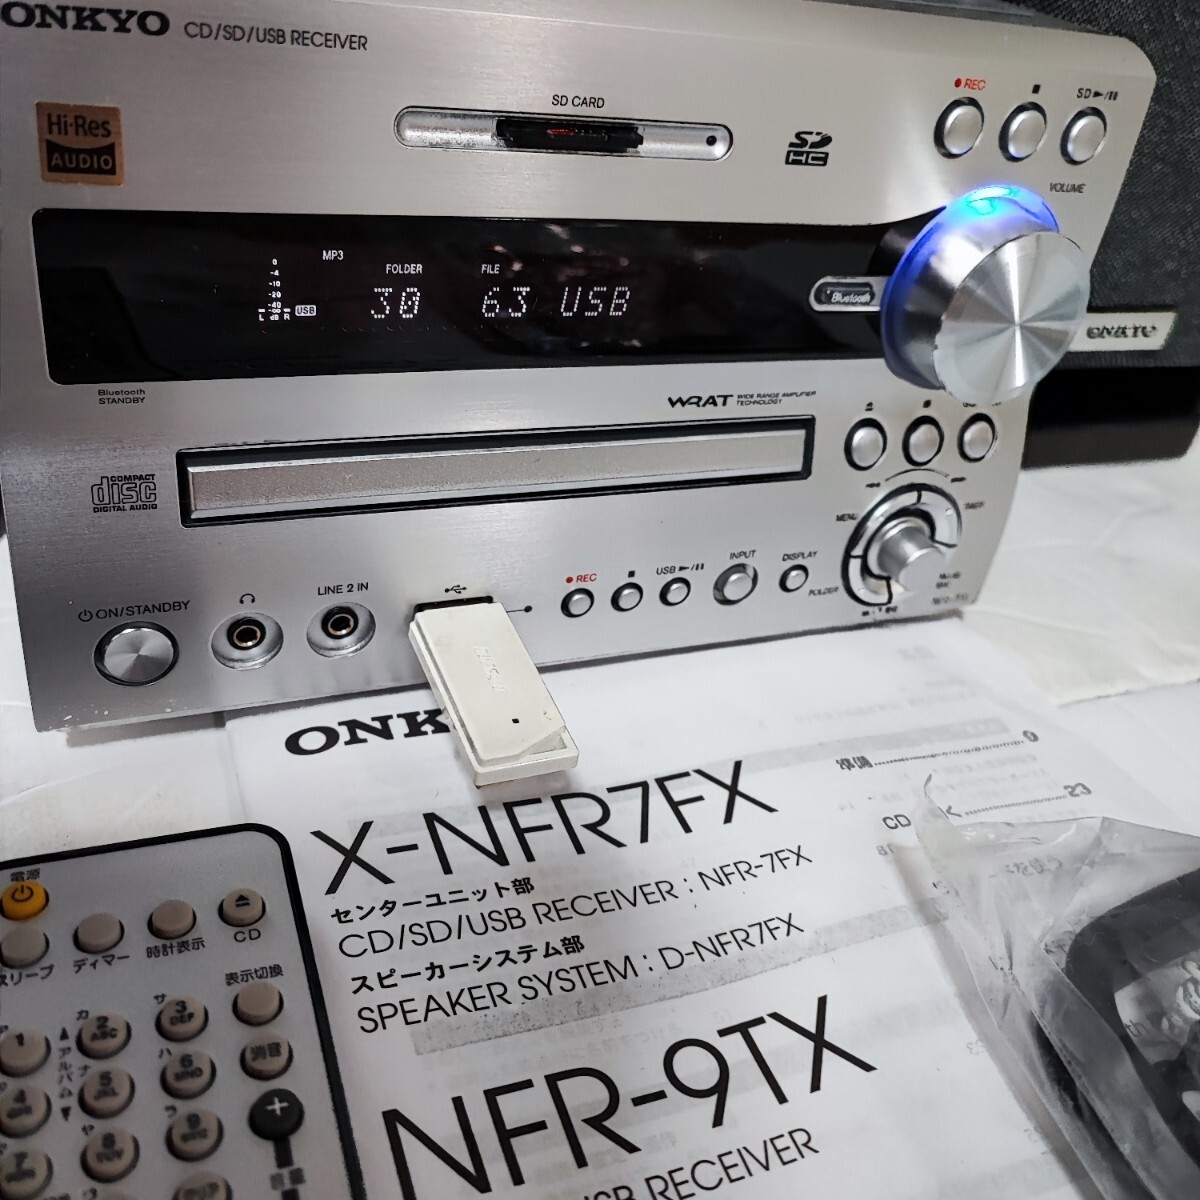 〓新品に近い〓　ONKYO X-NFR7FX(D) CD/SD/USBレシーバーシステム、ハイレゾ対応、2019年製の超美品商品★元箱入り_画像6